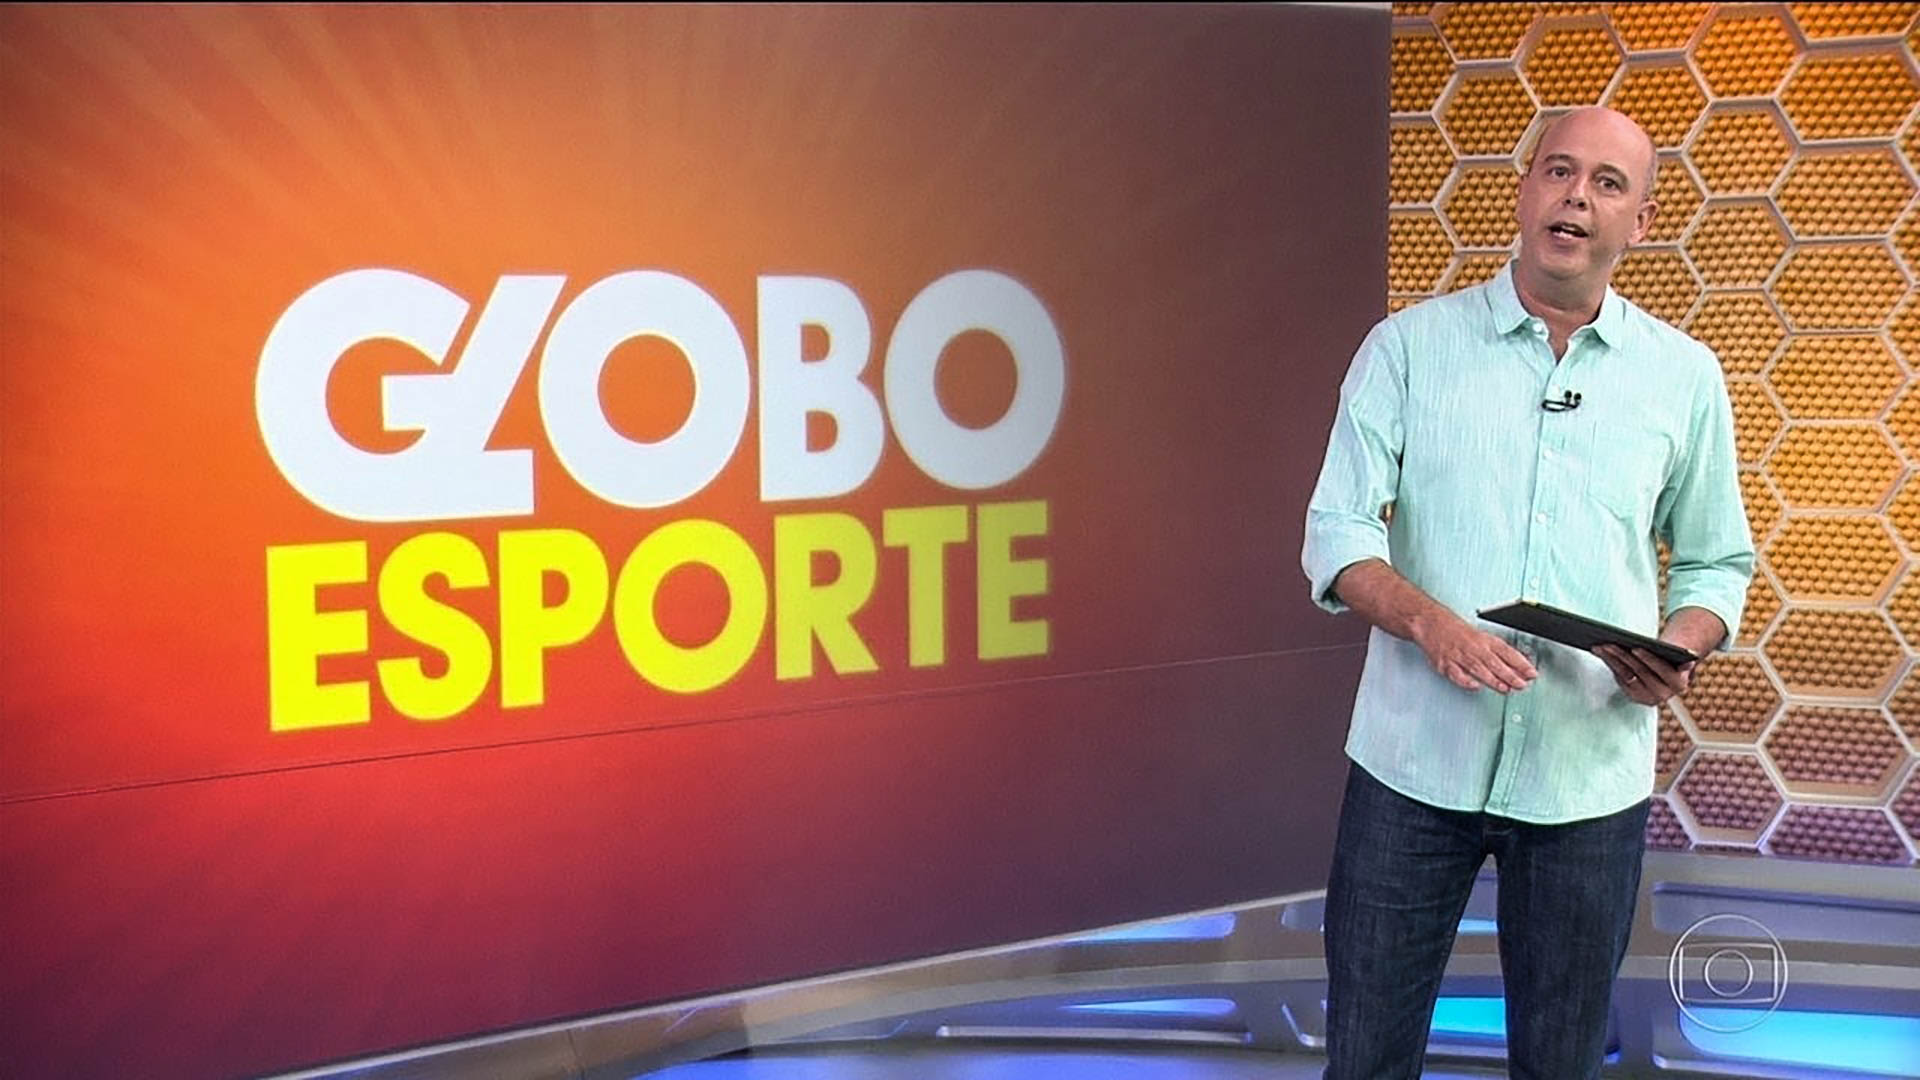 Globo Esporte - RJ